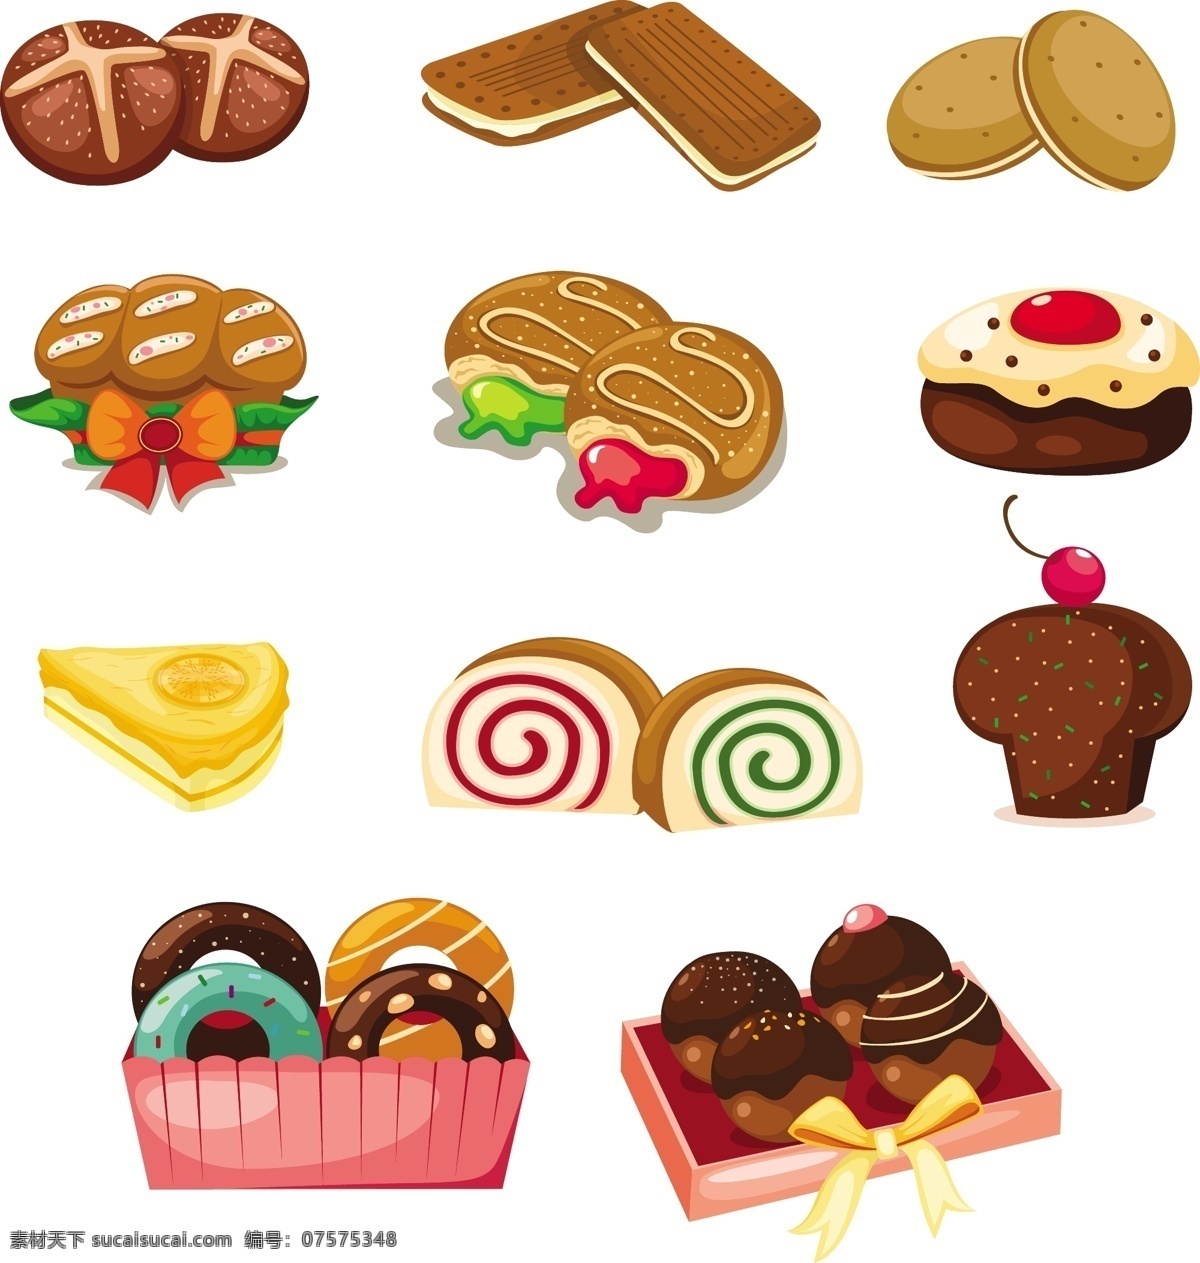 矢量 甜甜 圈 蛋糕 甜品 可爱 卡通 曲奇 饼干 矢量素材 设计元素 装饰图案